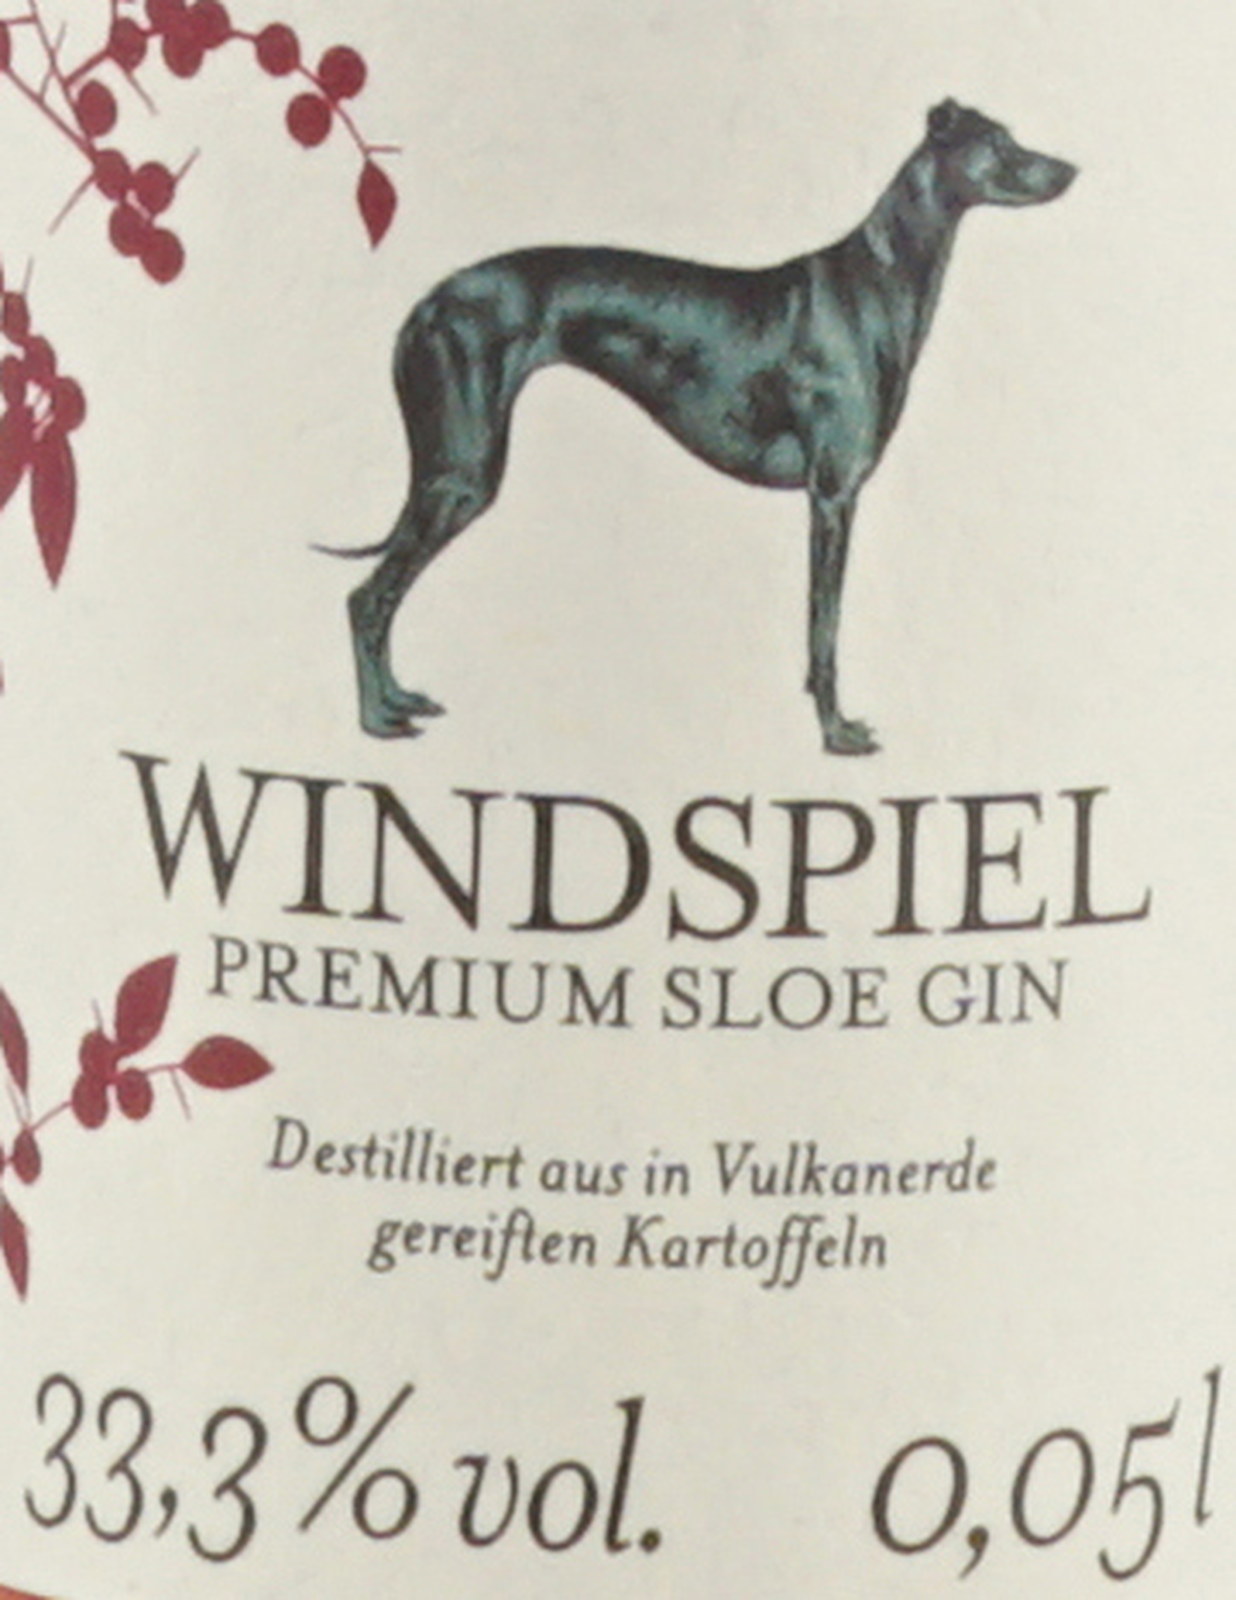 Windspiel Premium Sloe Gin 33,3 Liter % 0,05